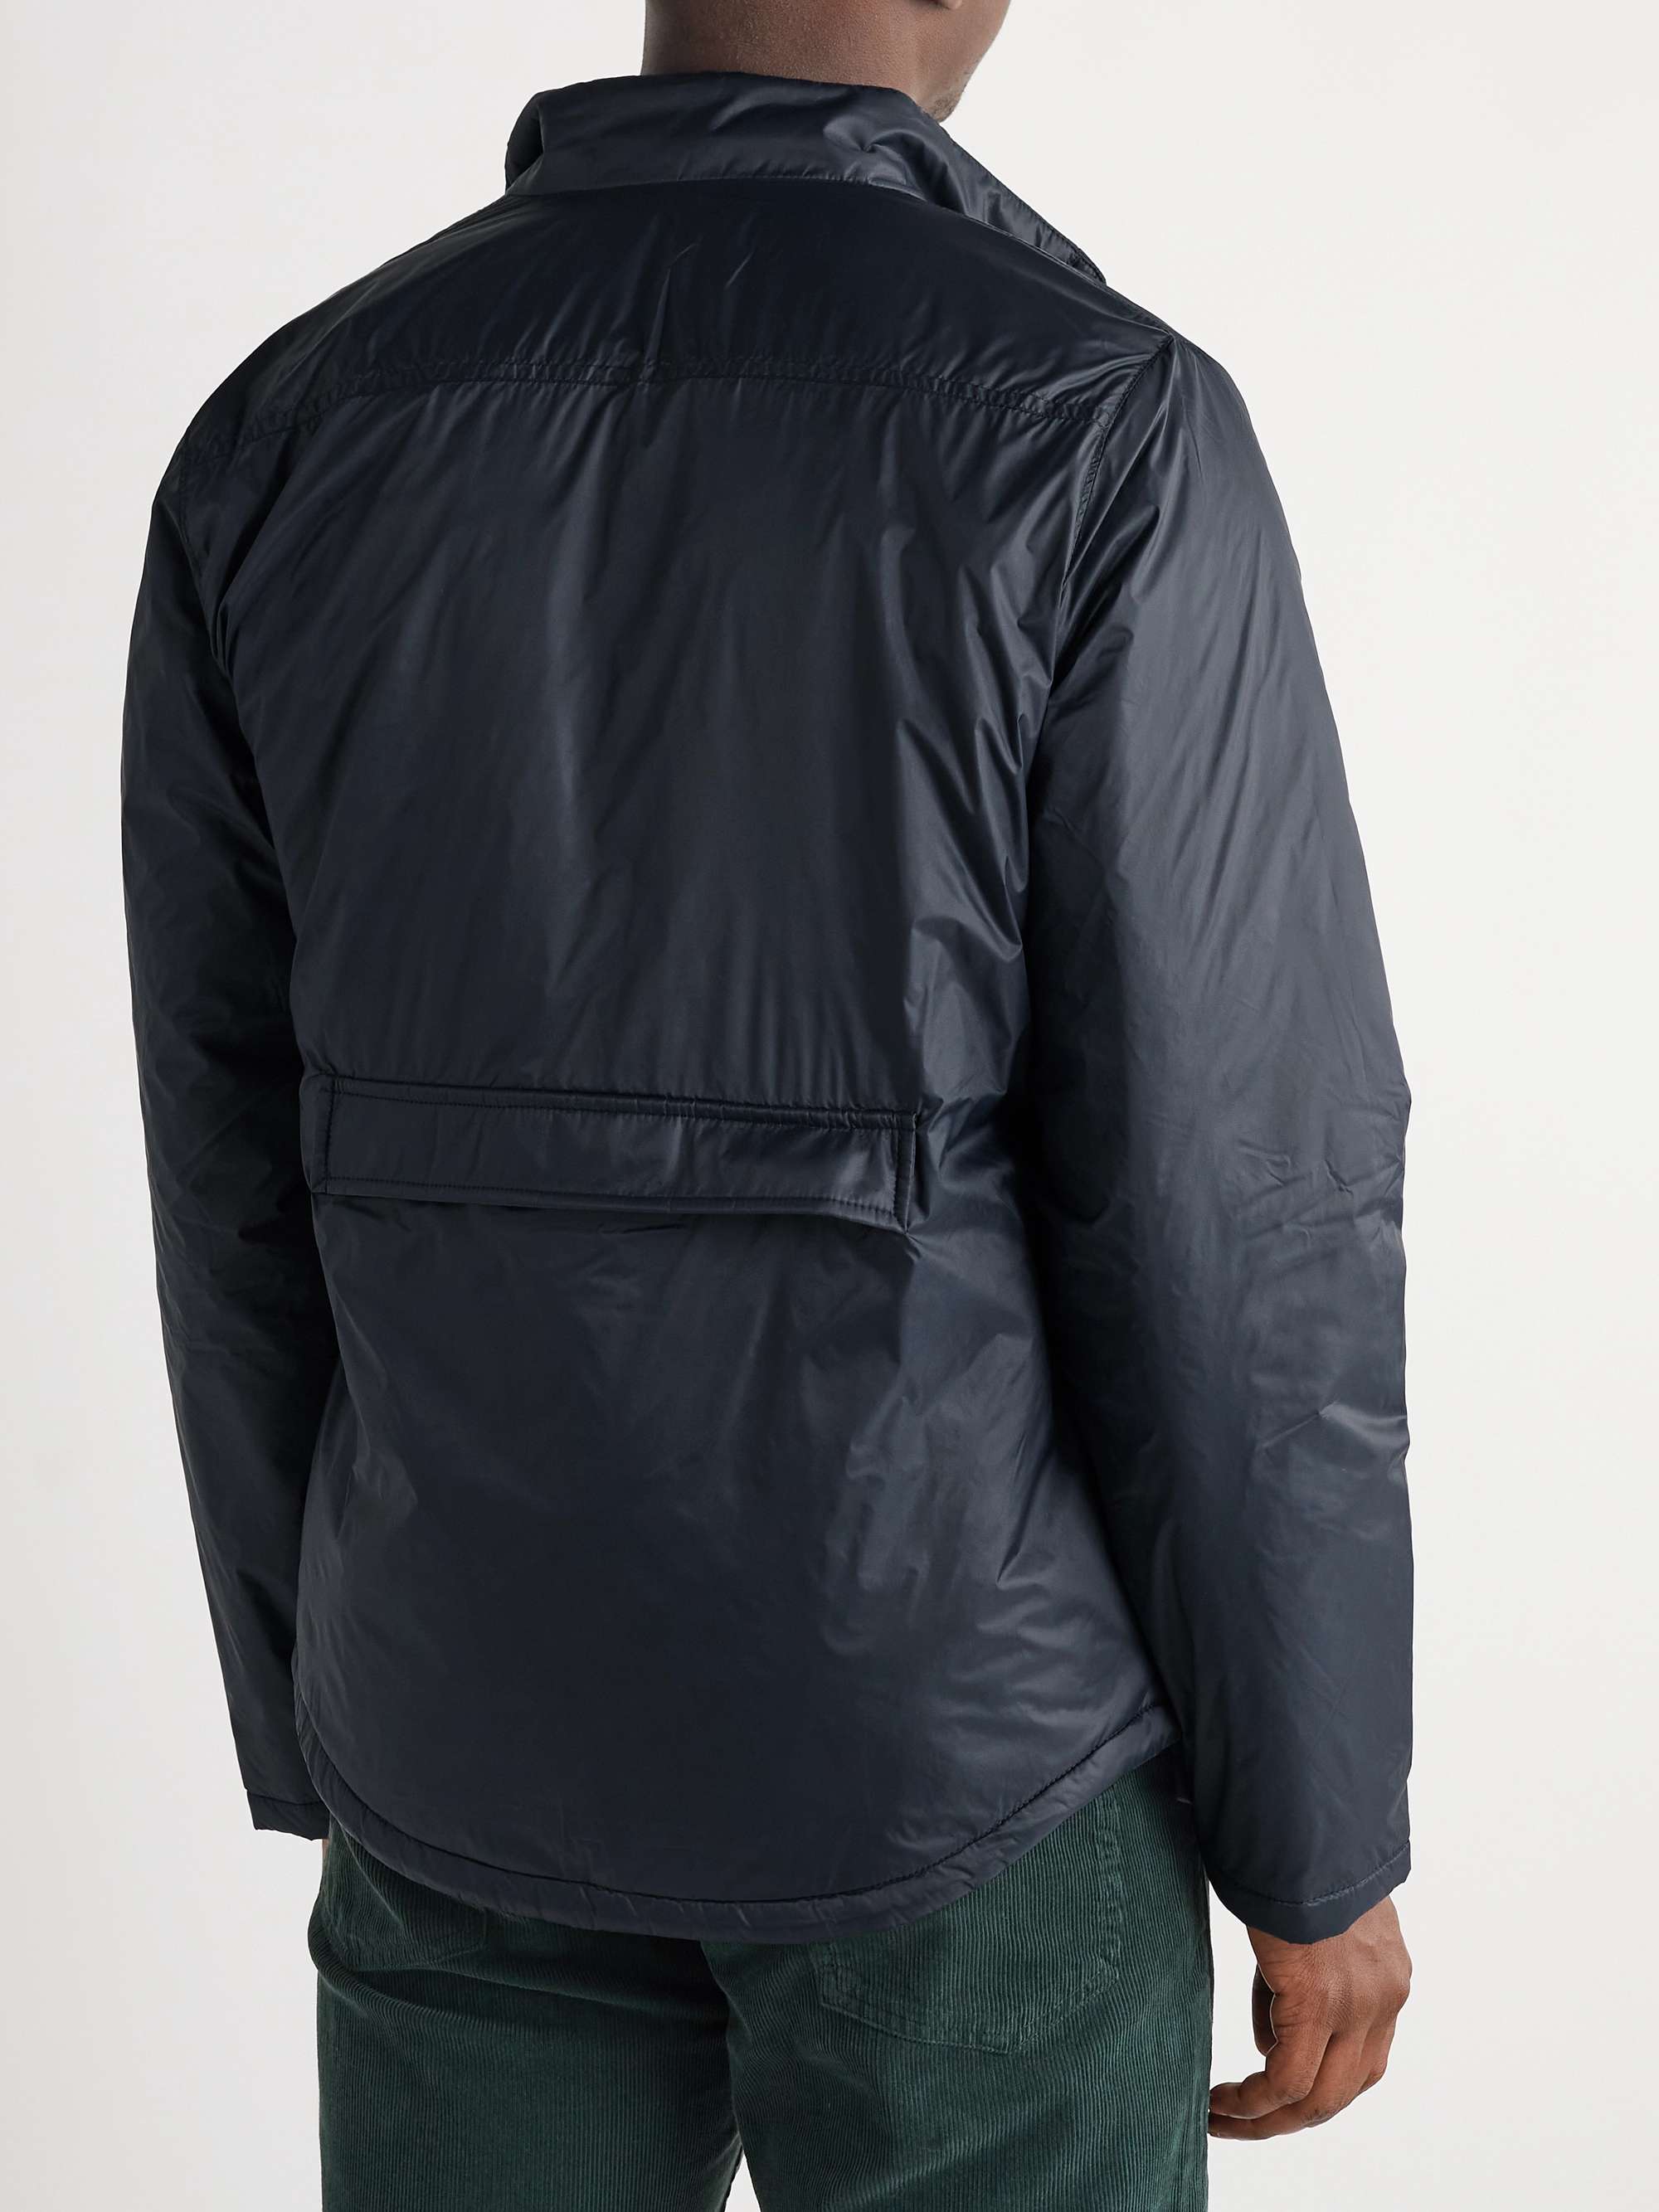 SID MASHBURN Traveler's Padded Nylon Jacket